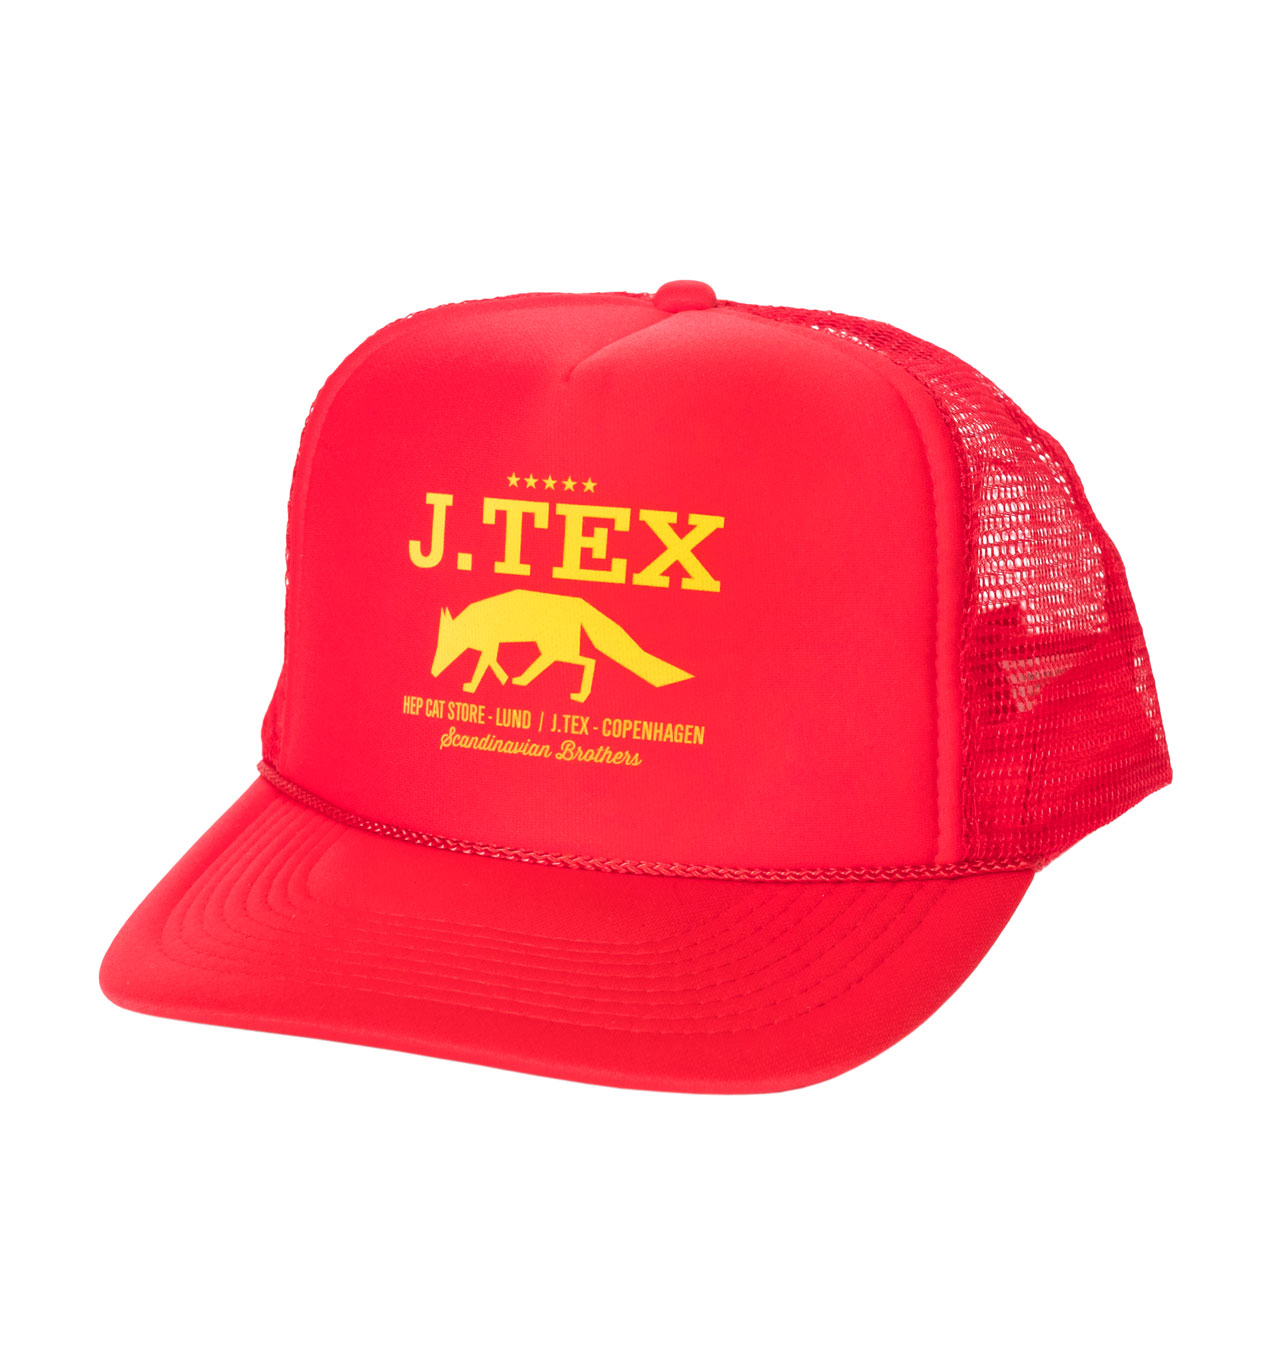 J-Tex---Scandinavian-Brothers-Trucker-Cap---red